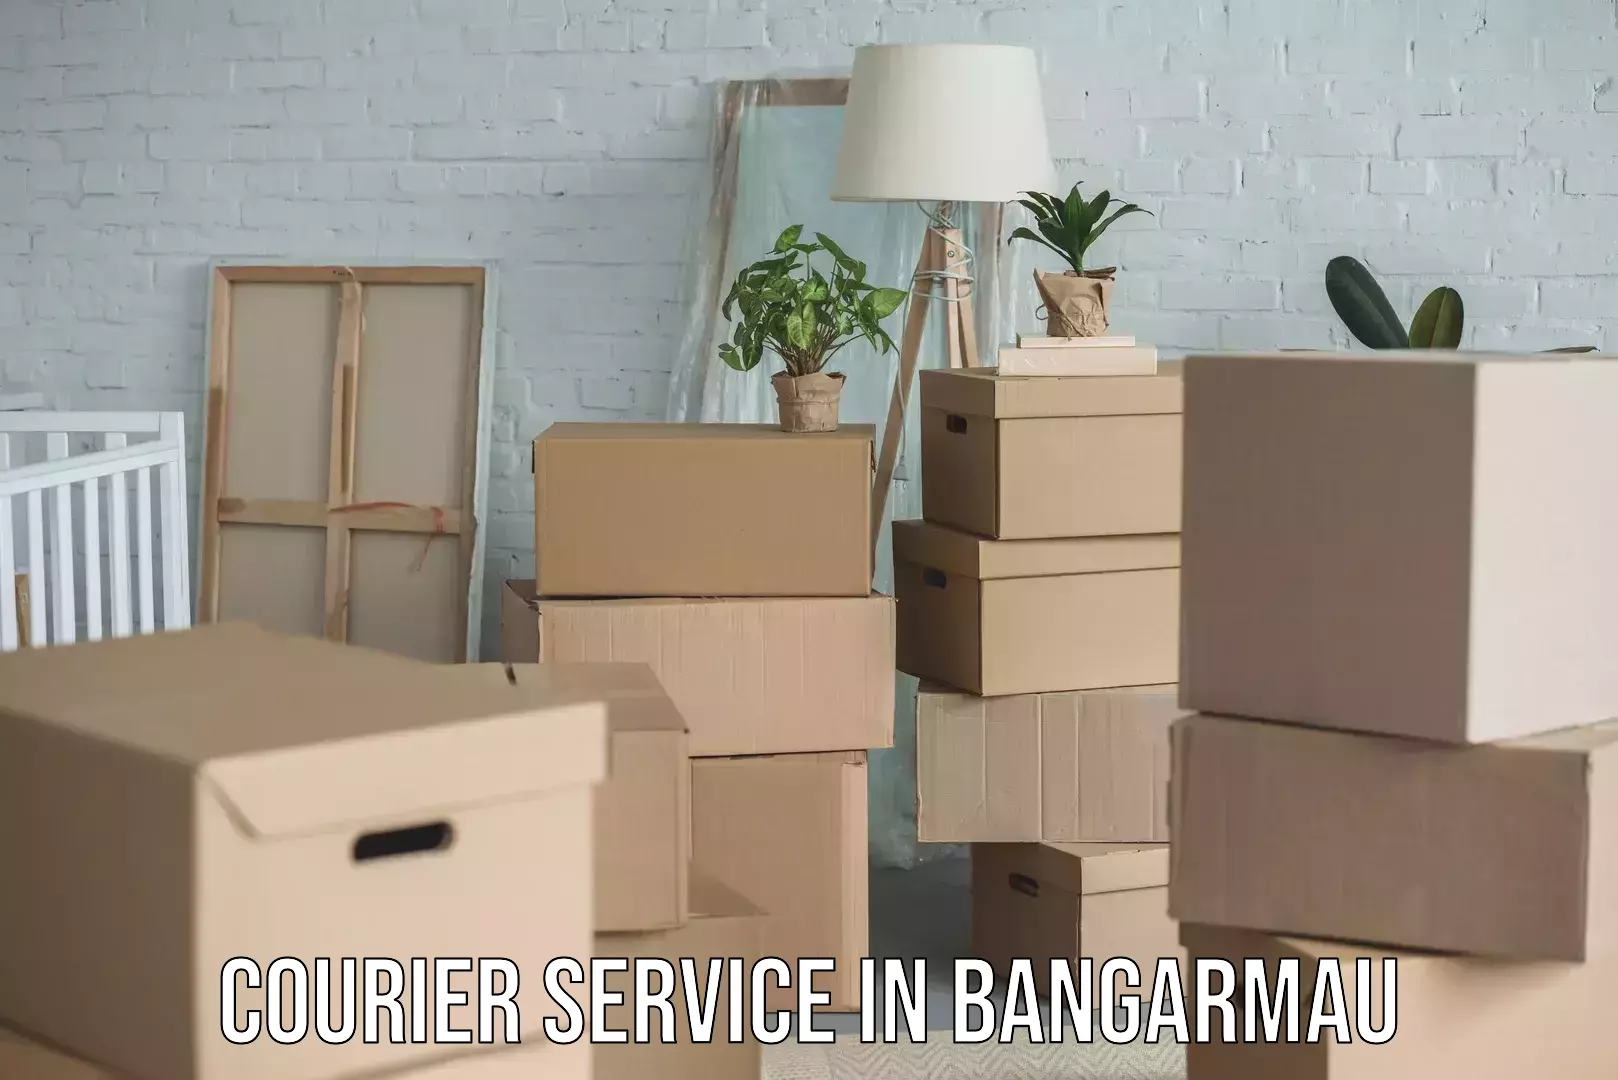 Efficient logistics management in Bangarmau